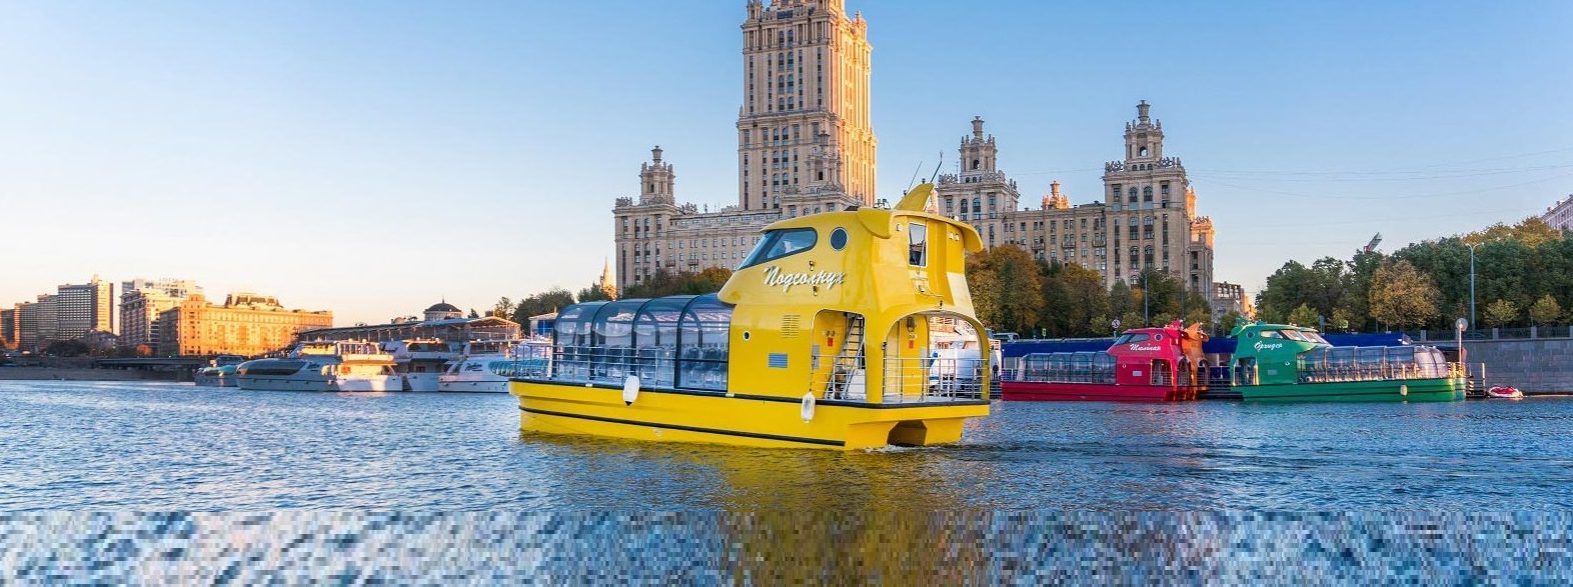 Речной трамвайчик в москве